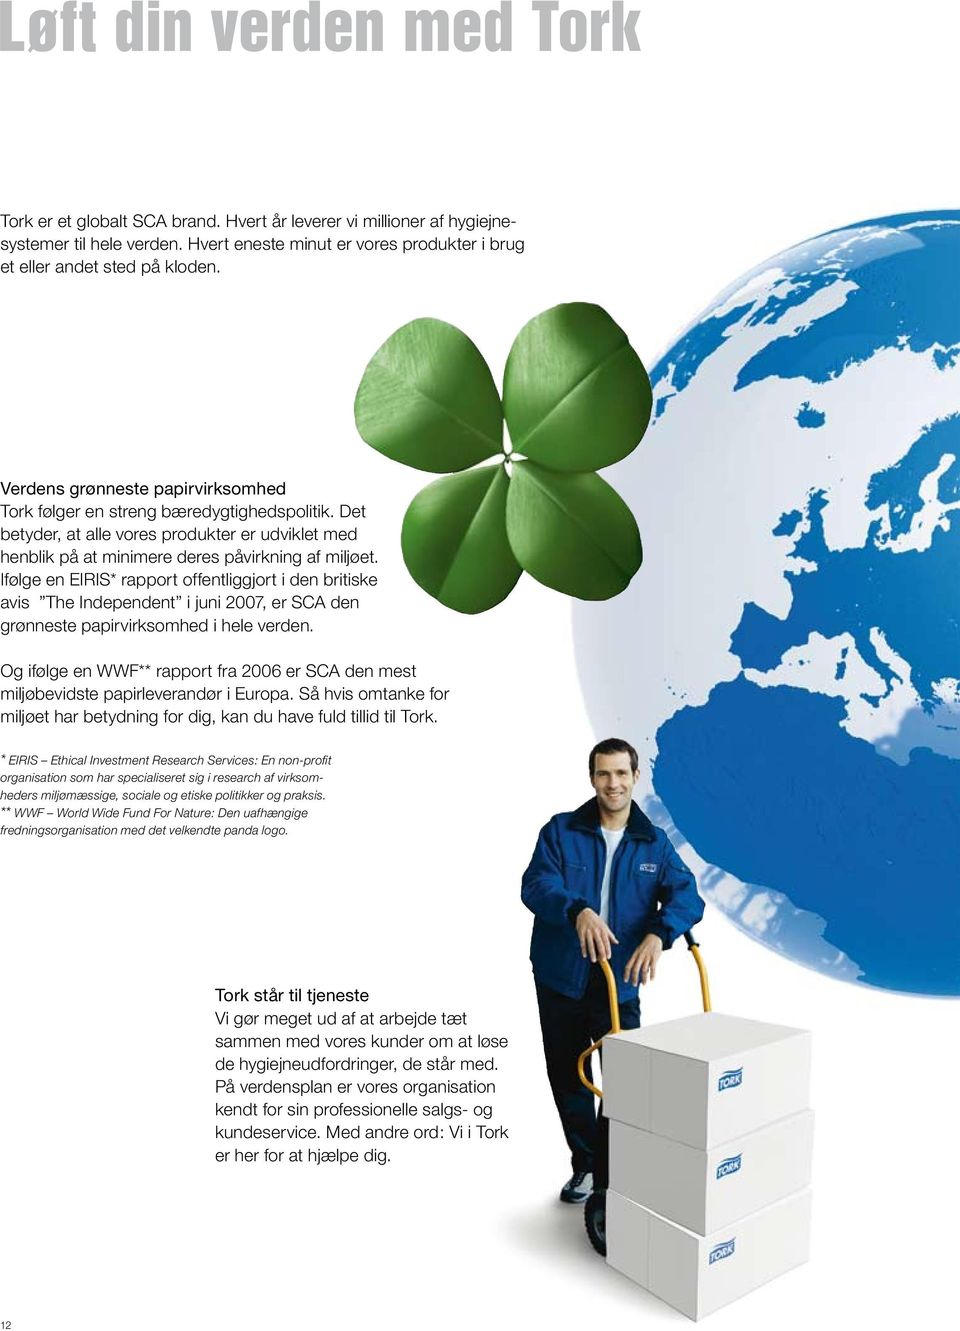 Ifølge en EIRIS* rapport offentliggjort i den britiske avis The Independent i juni 2007, er SCA den grønneste papirvirksomhed i hele verden.